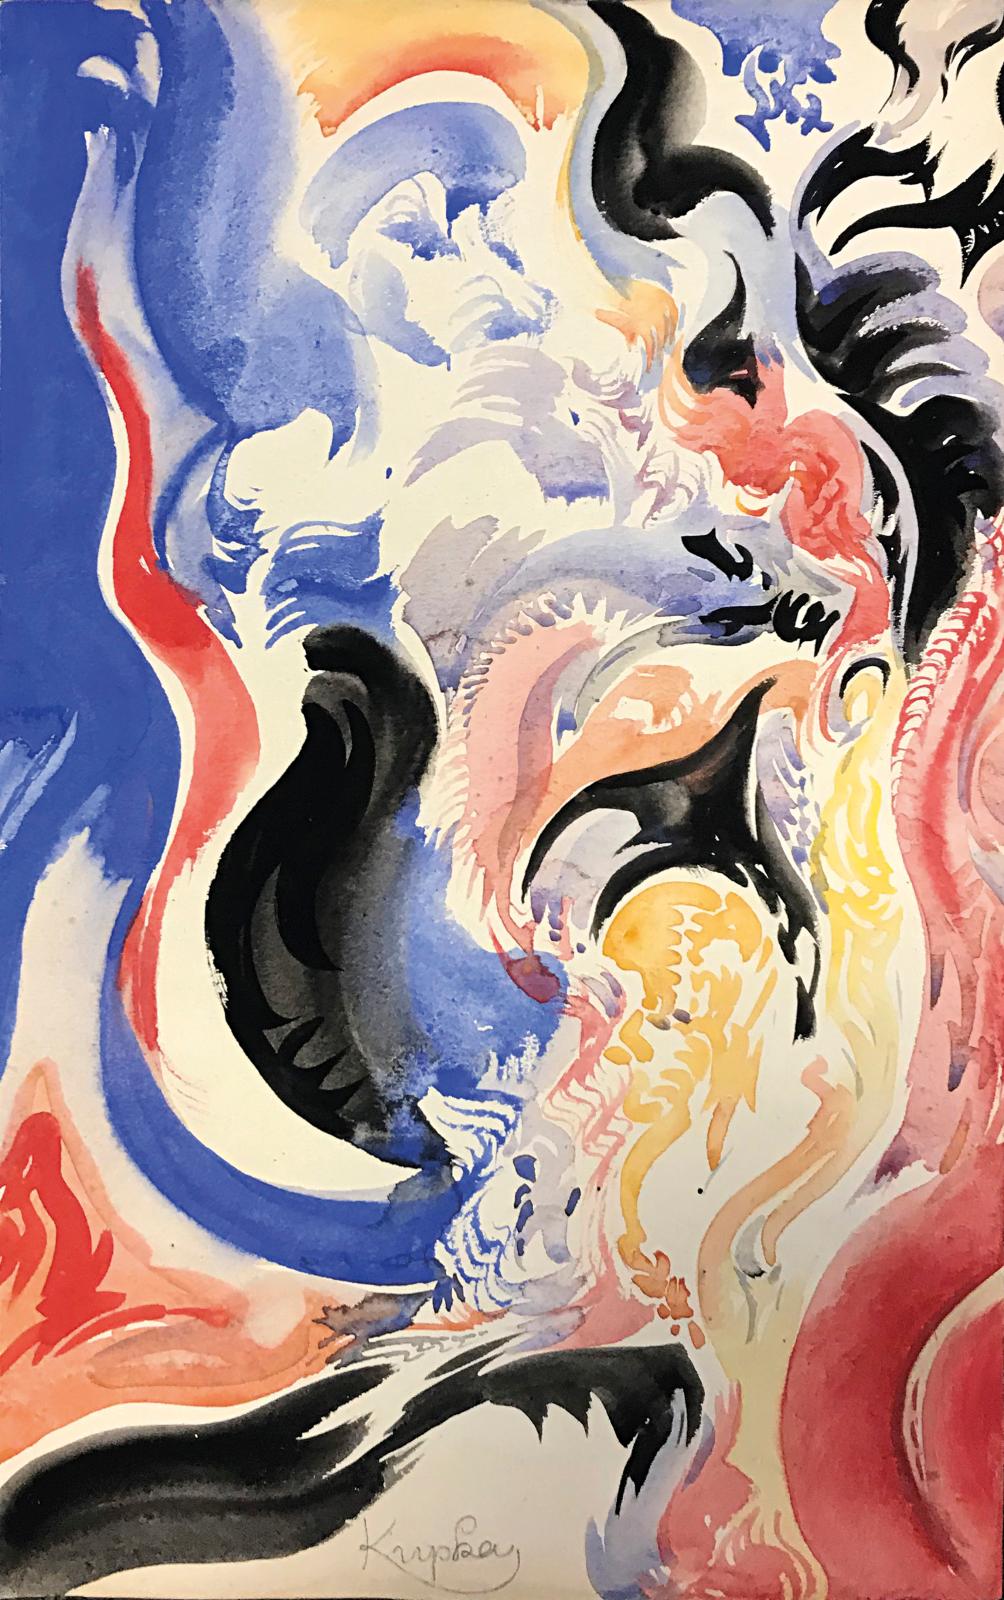 Kupka, l’intensité des couleurs et des formes